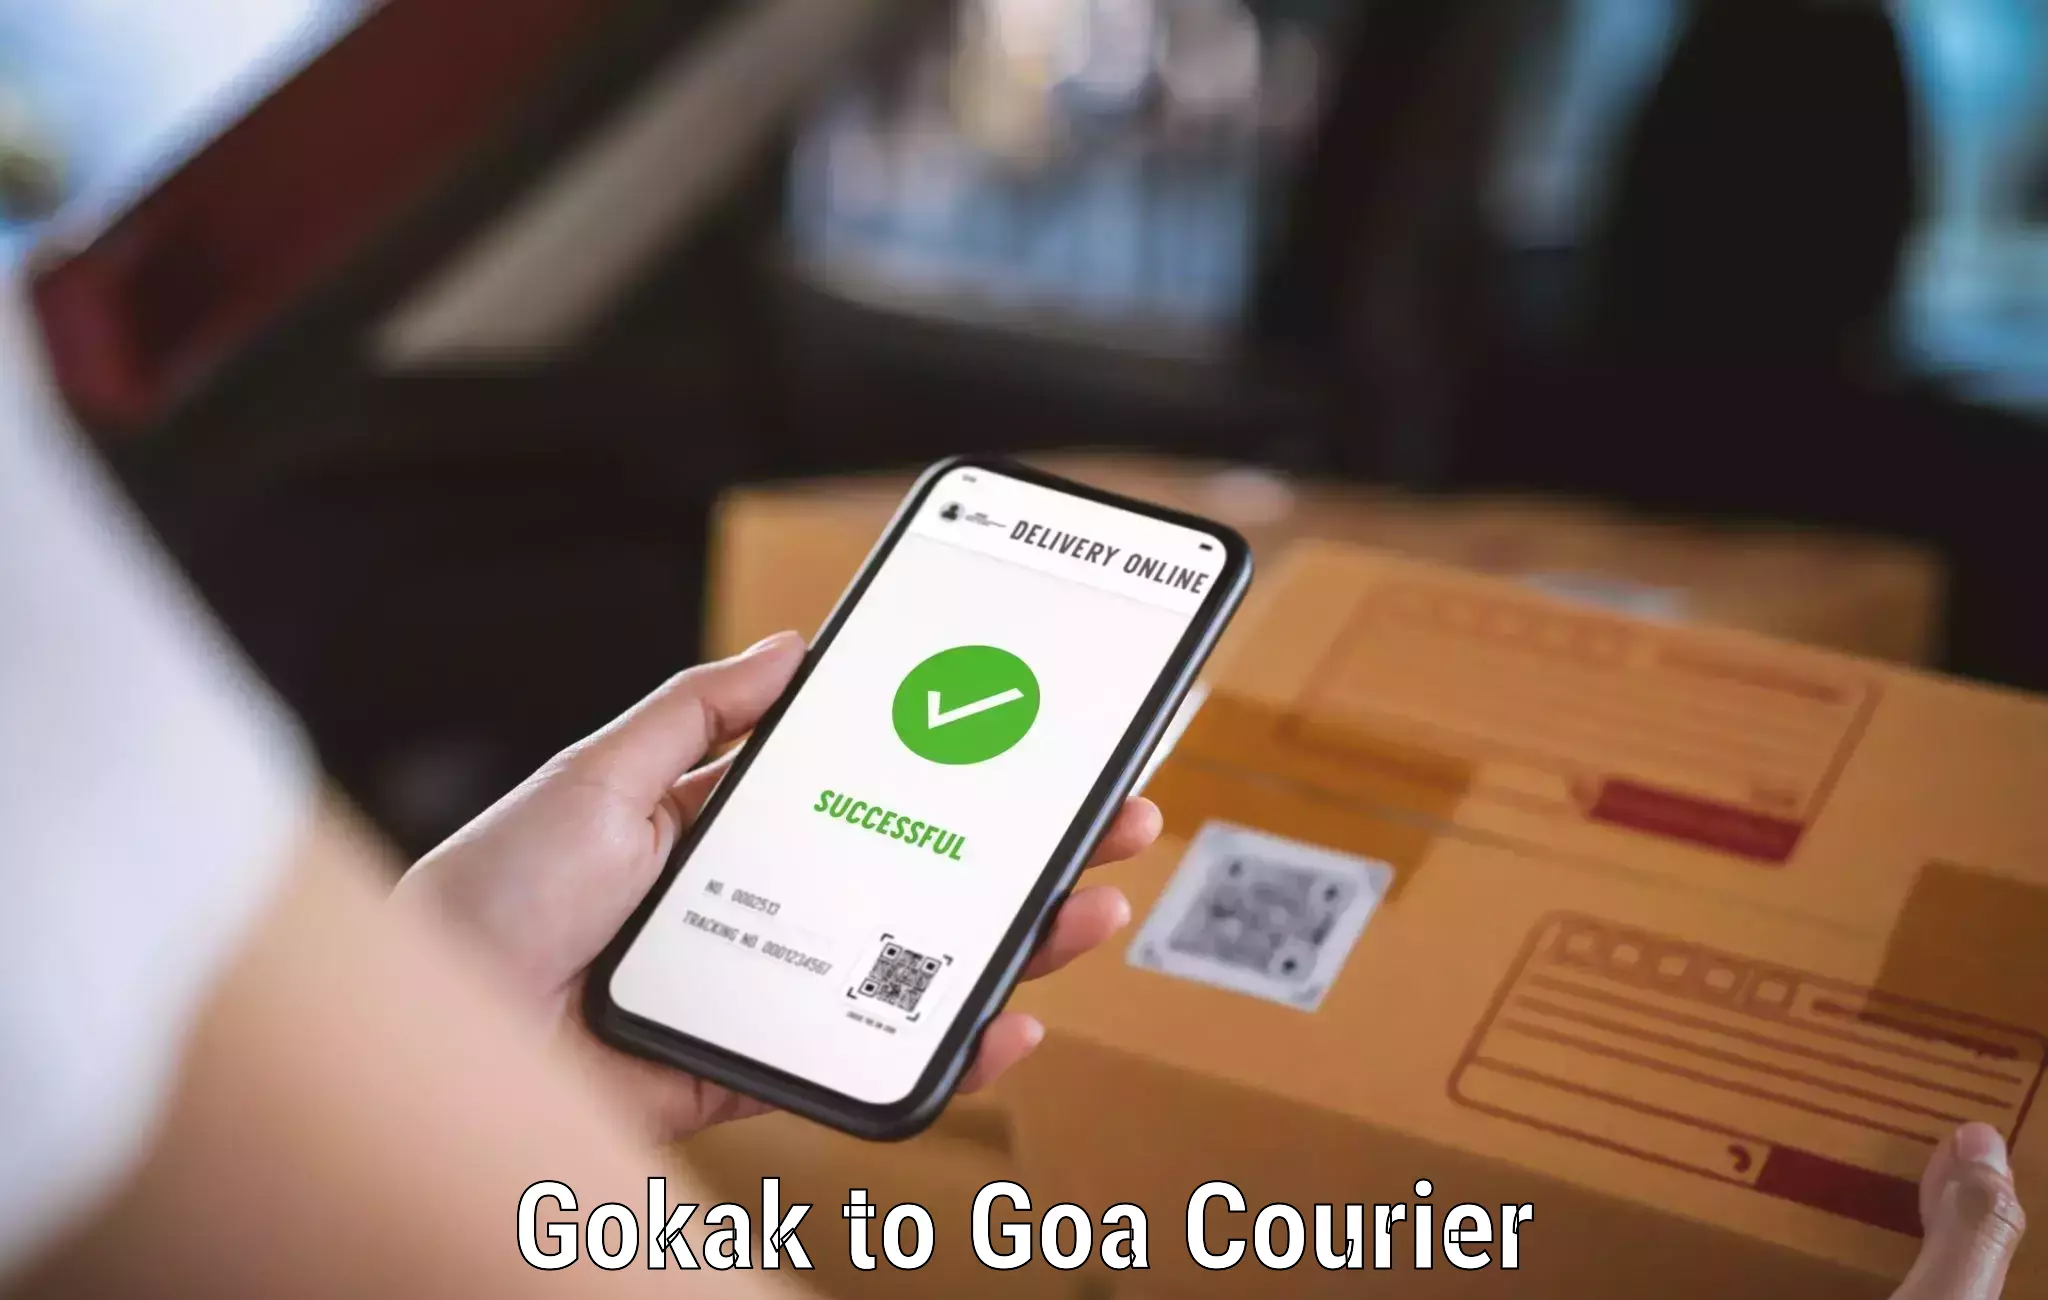 Seamless shipping experience Gokak to Goa